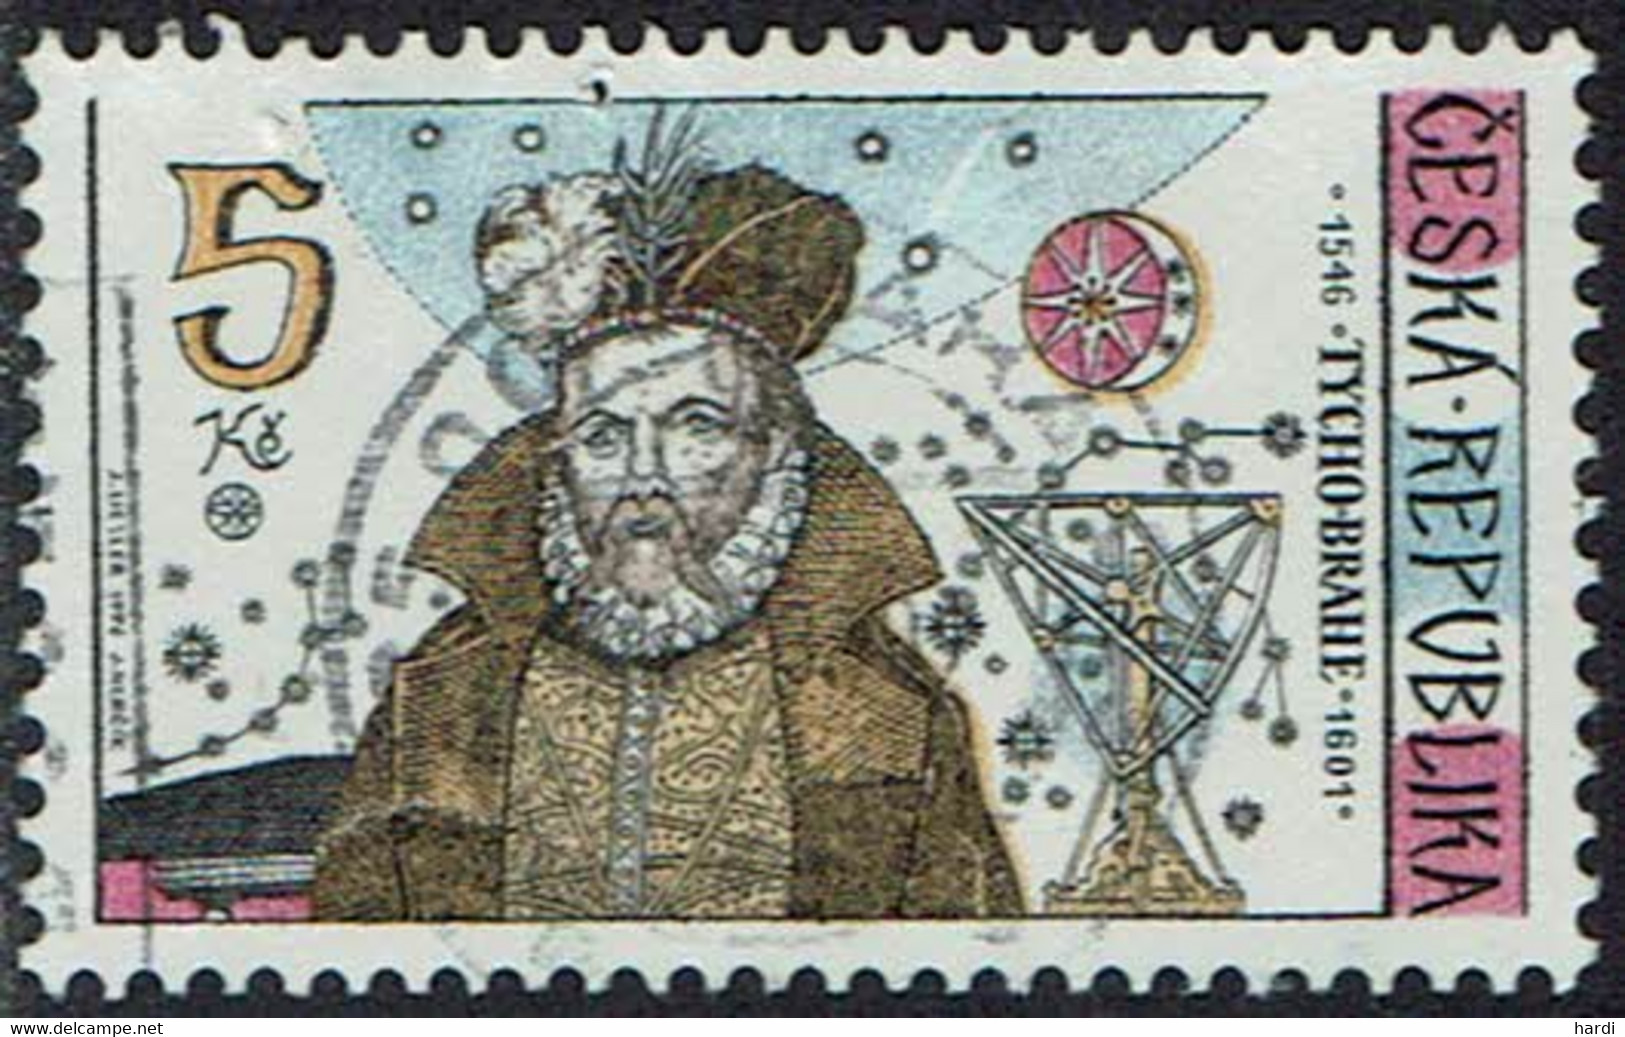 Tschechische Republik, 1996, MiNr 126, Gestempelt - Used Stamps